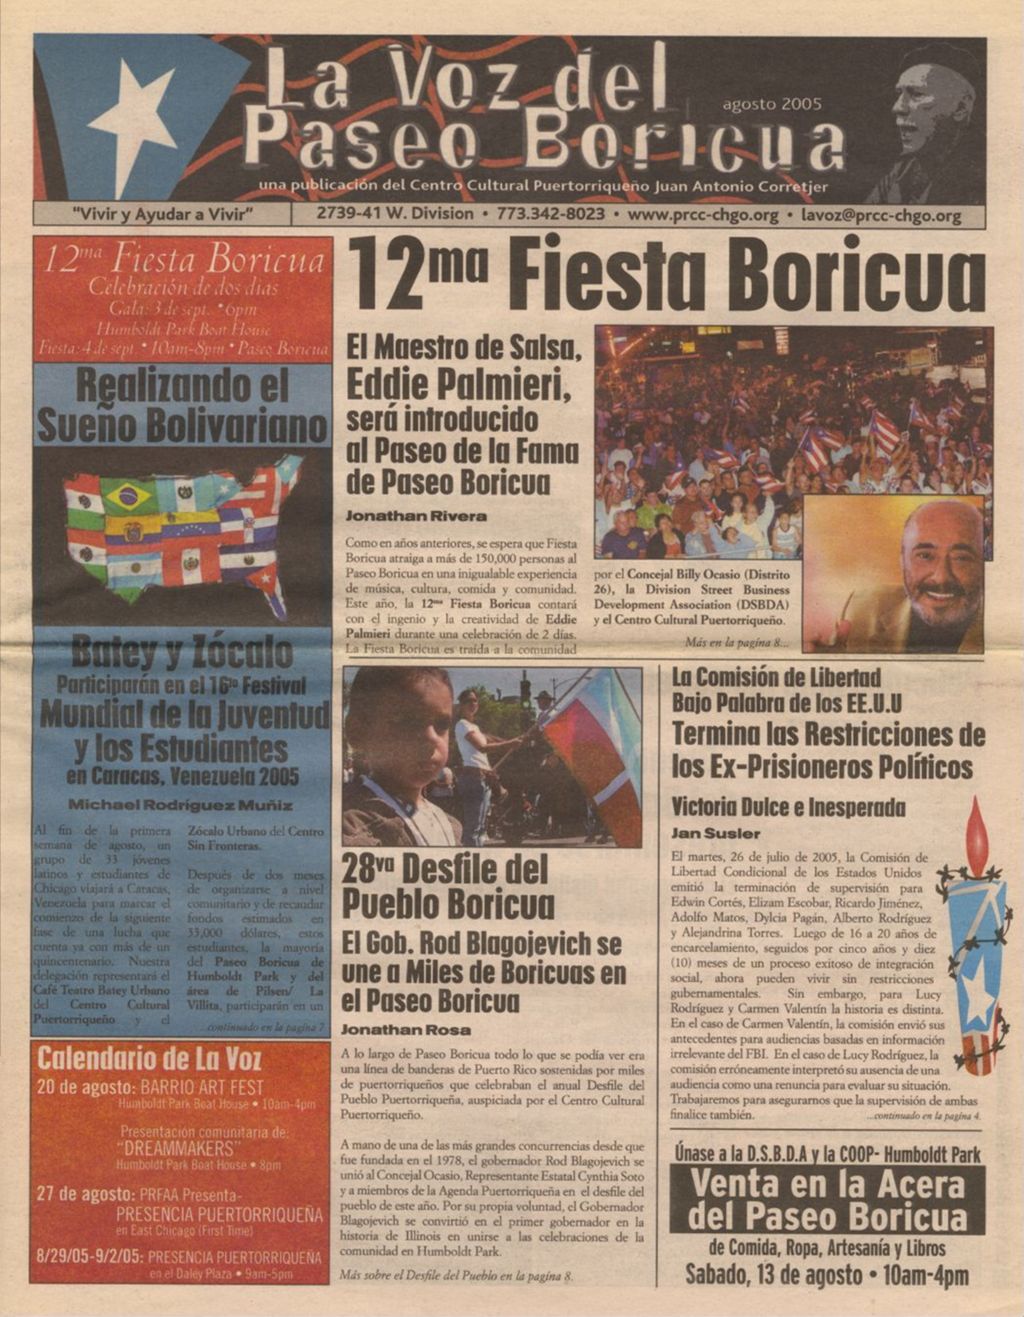 Miniature of La Voz del Paseo Boricua; August 2005 (Spanish and English covers)